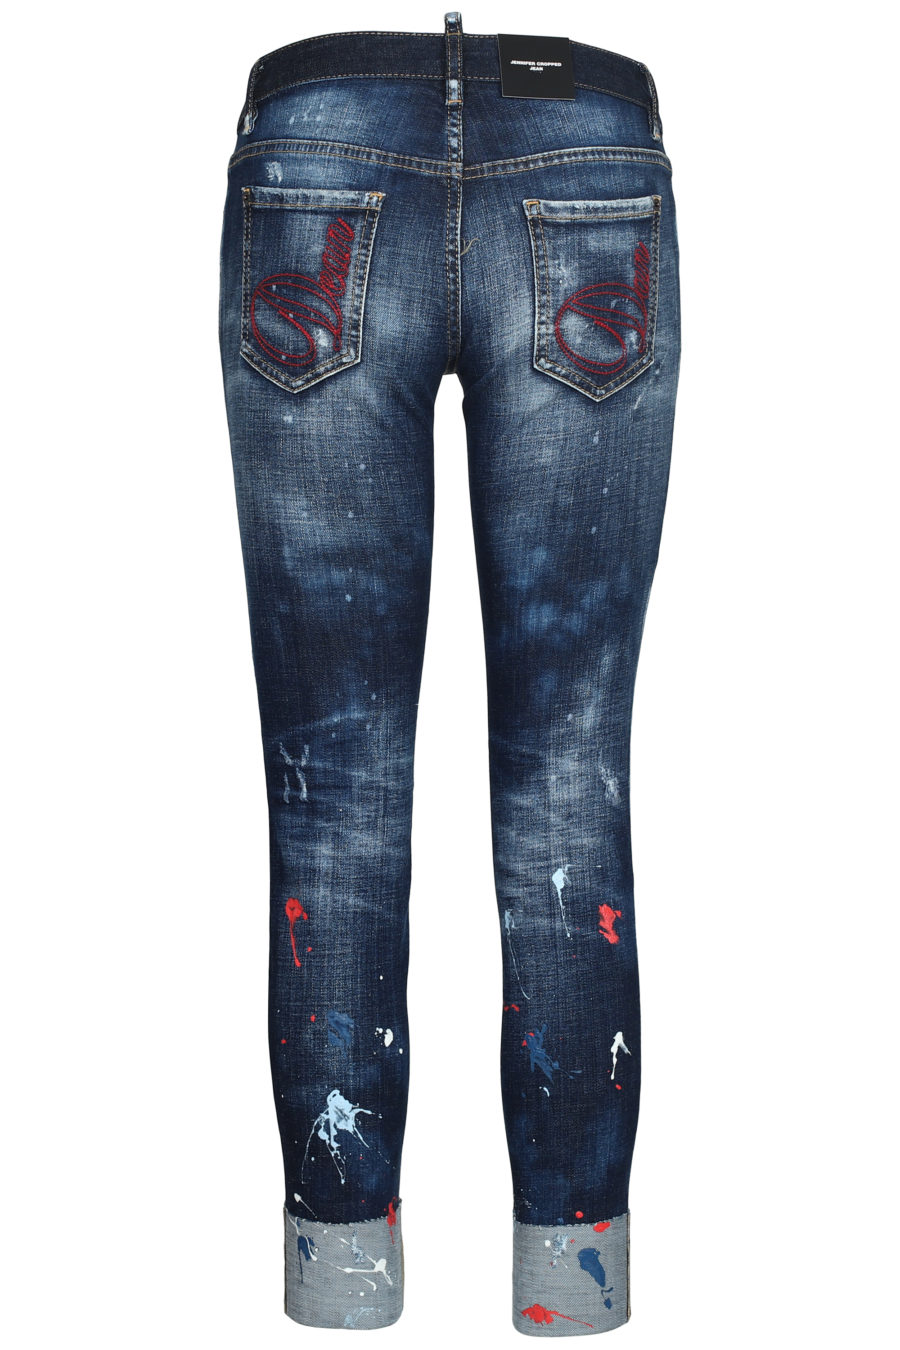 Jeans avec taches de peinture "Jennifer cropped" - IMG 5614